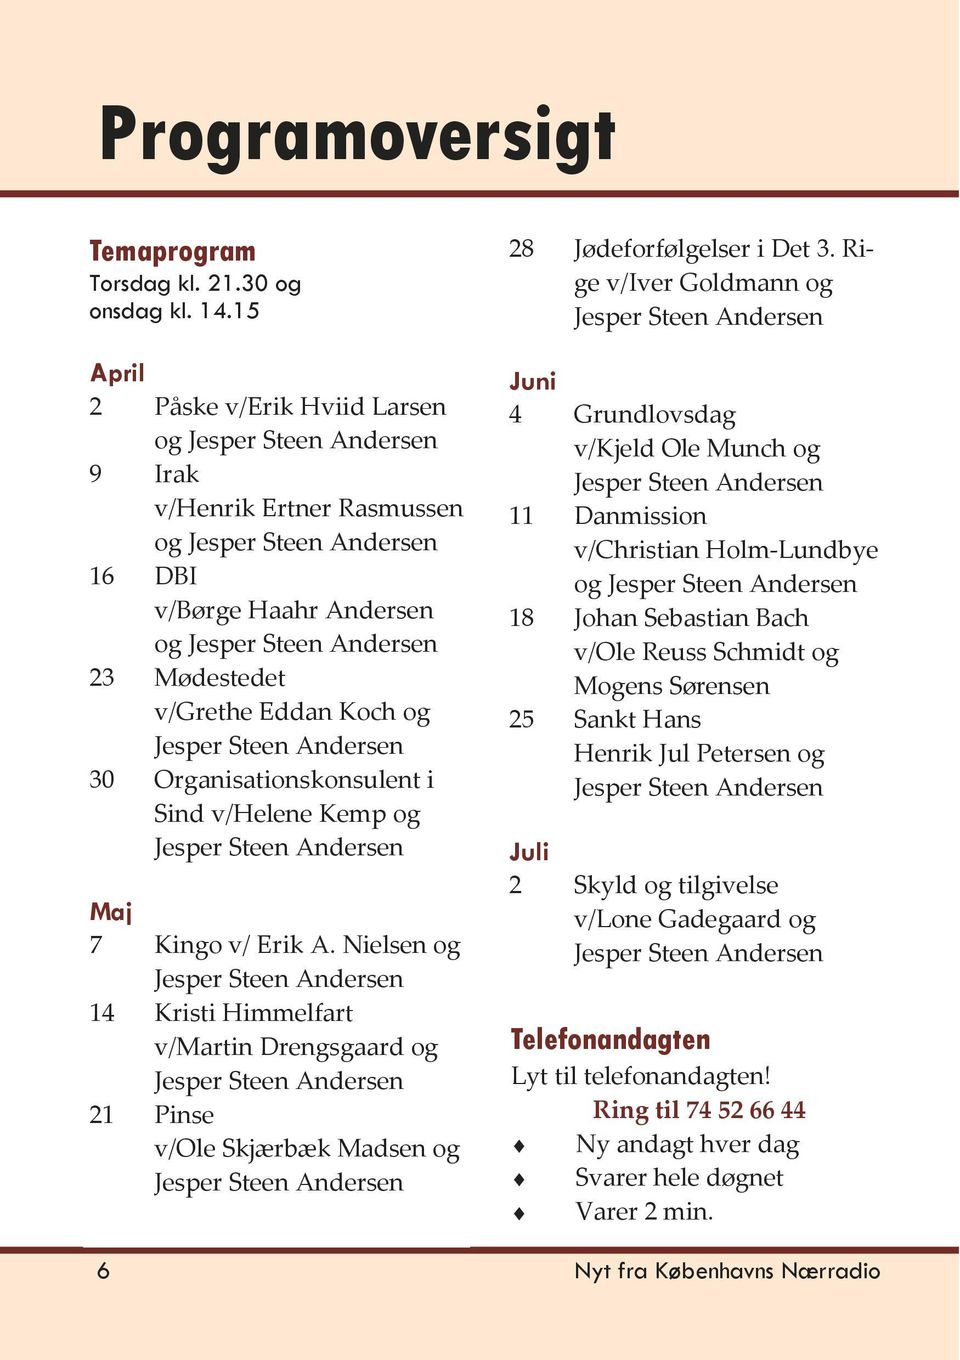 Kingo v/ Erik A. Nielsen og 14 Kristi Himmelfart v/martin Drengsgaard og 21 Pinse v/ole Skjærbæk Madsen og 28 Jødeforfølgelser i Det 3.